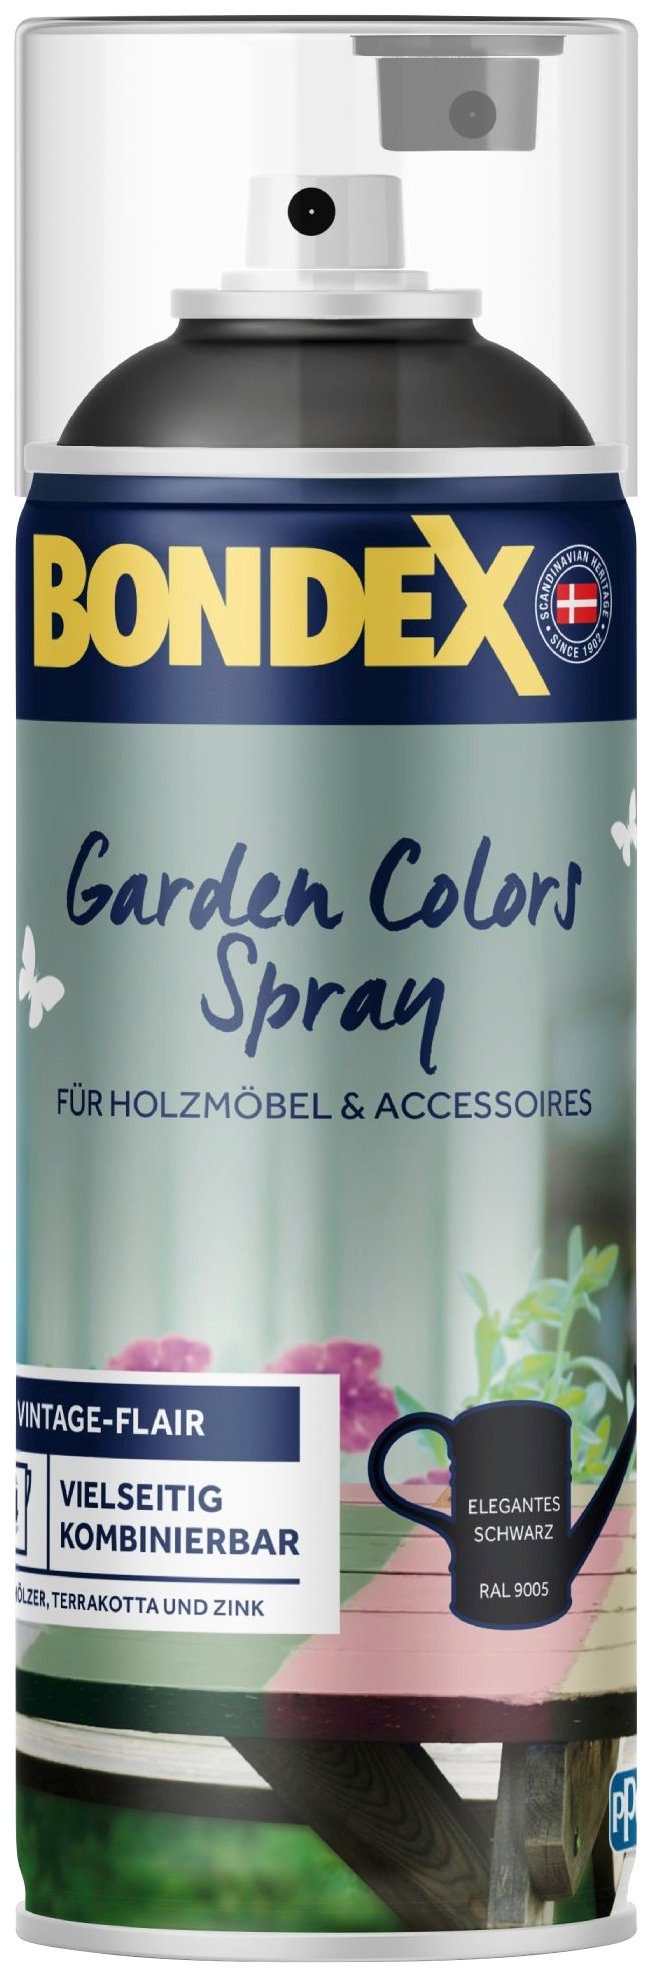 Bondex Wetterschutzfarbe GARDEN COLORS Spray, Zartes Lagunenblau, 0,4 Liter Inhalt Elegantes Schwarz / RAL 9004